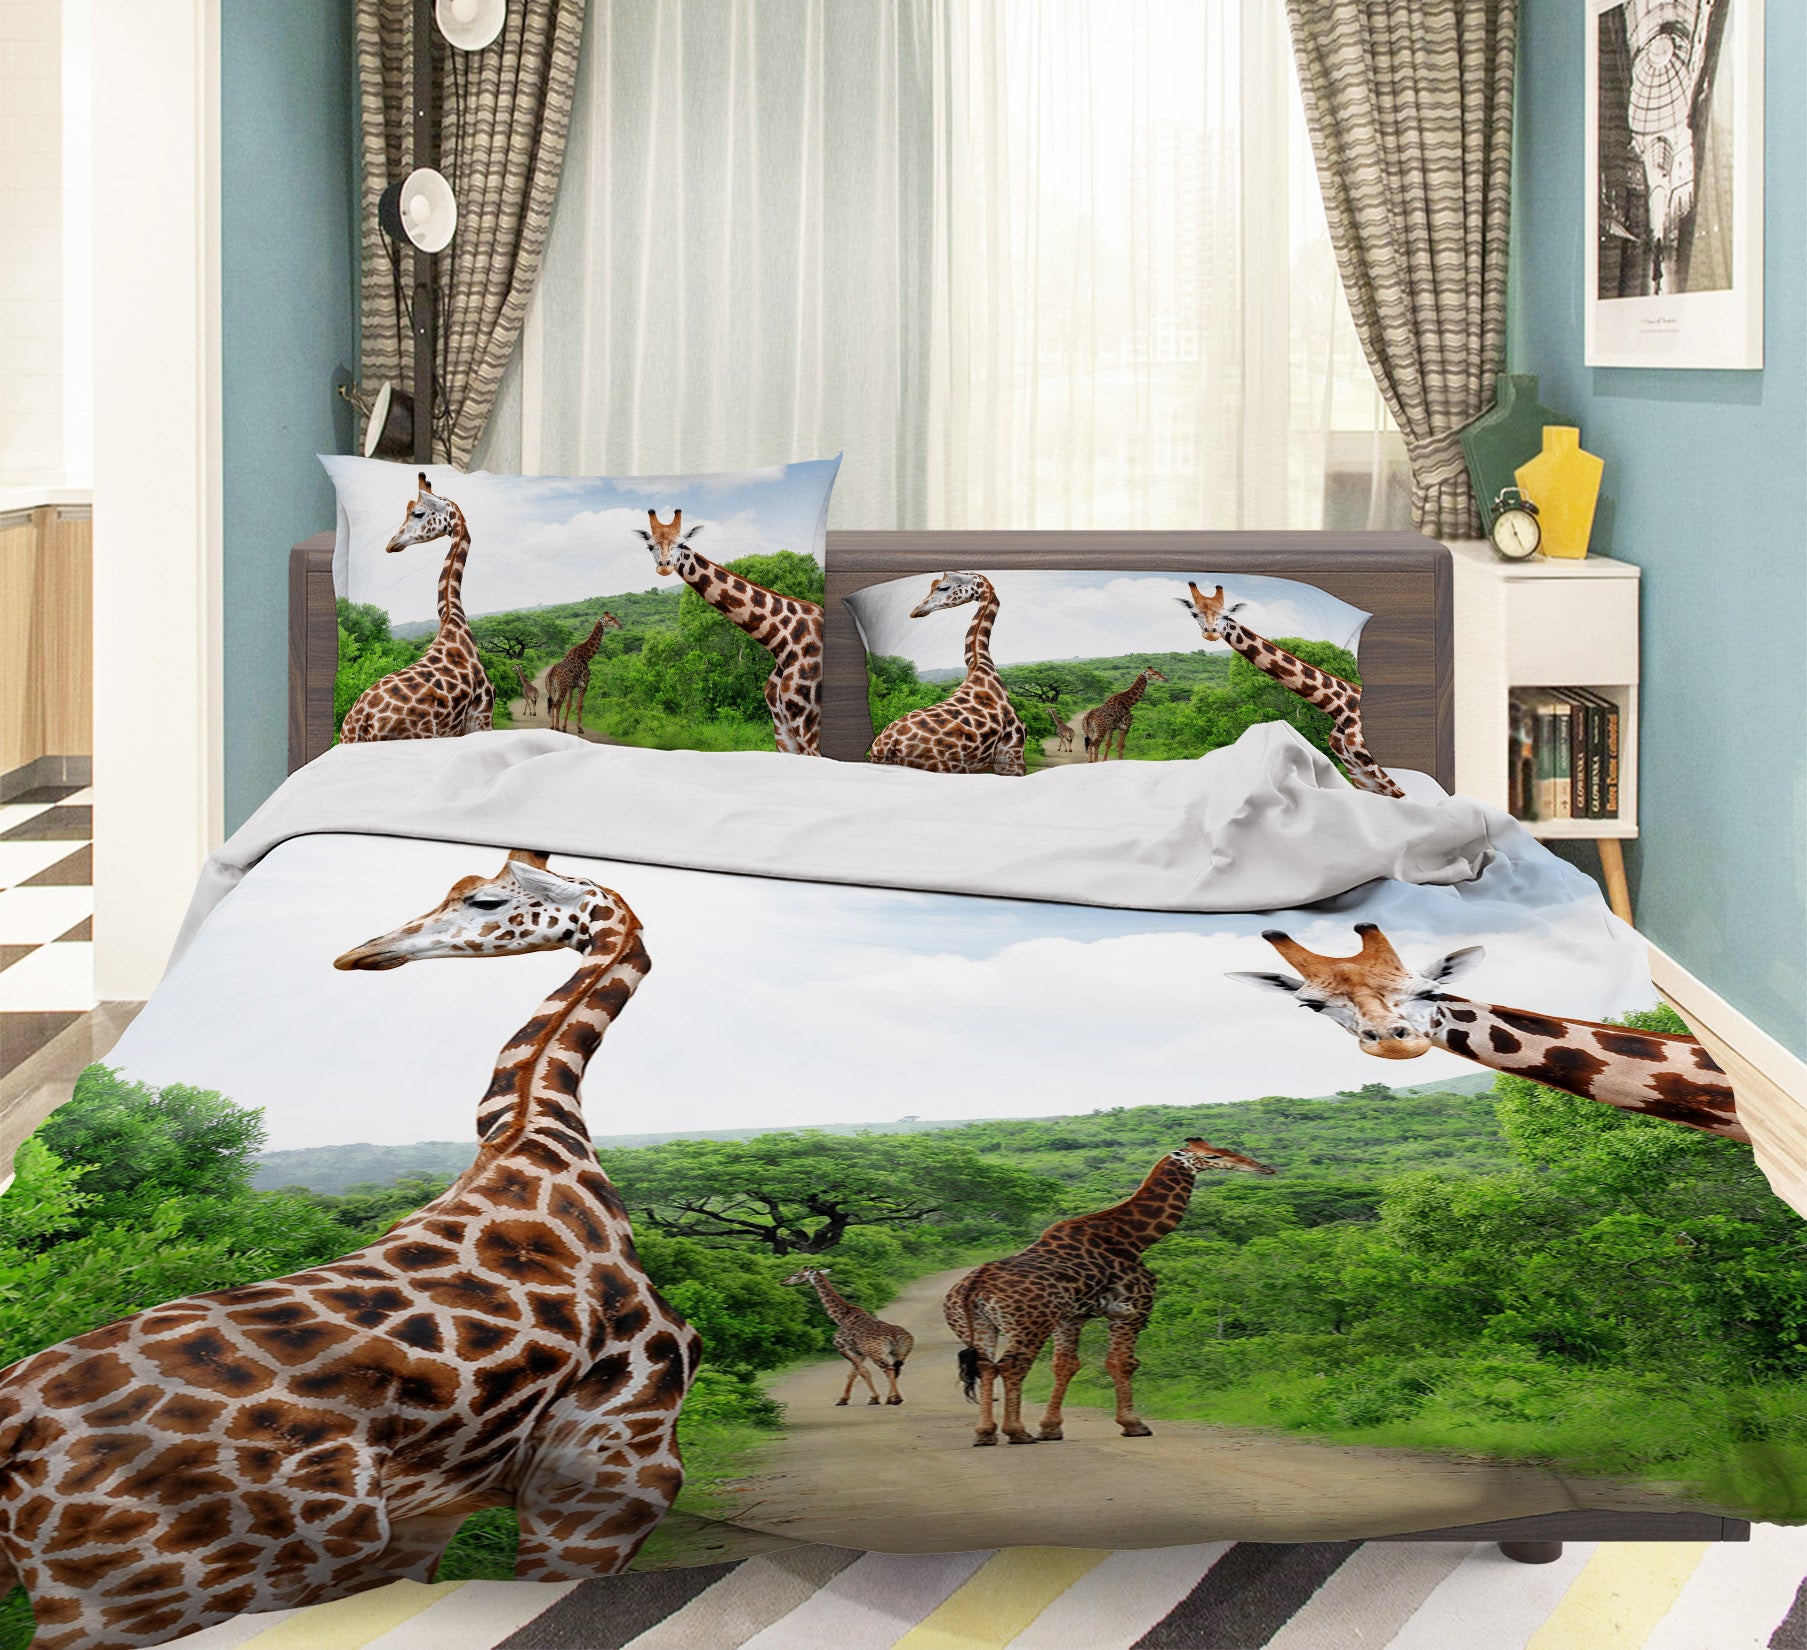 3D Giraffe Forest 004 Bed Pillowcases Quilt